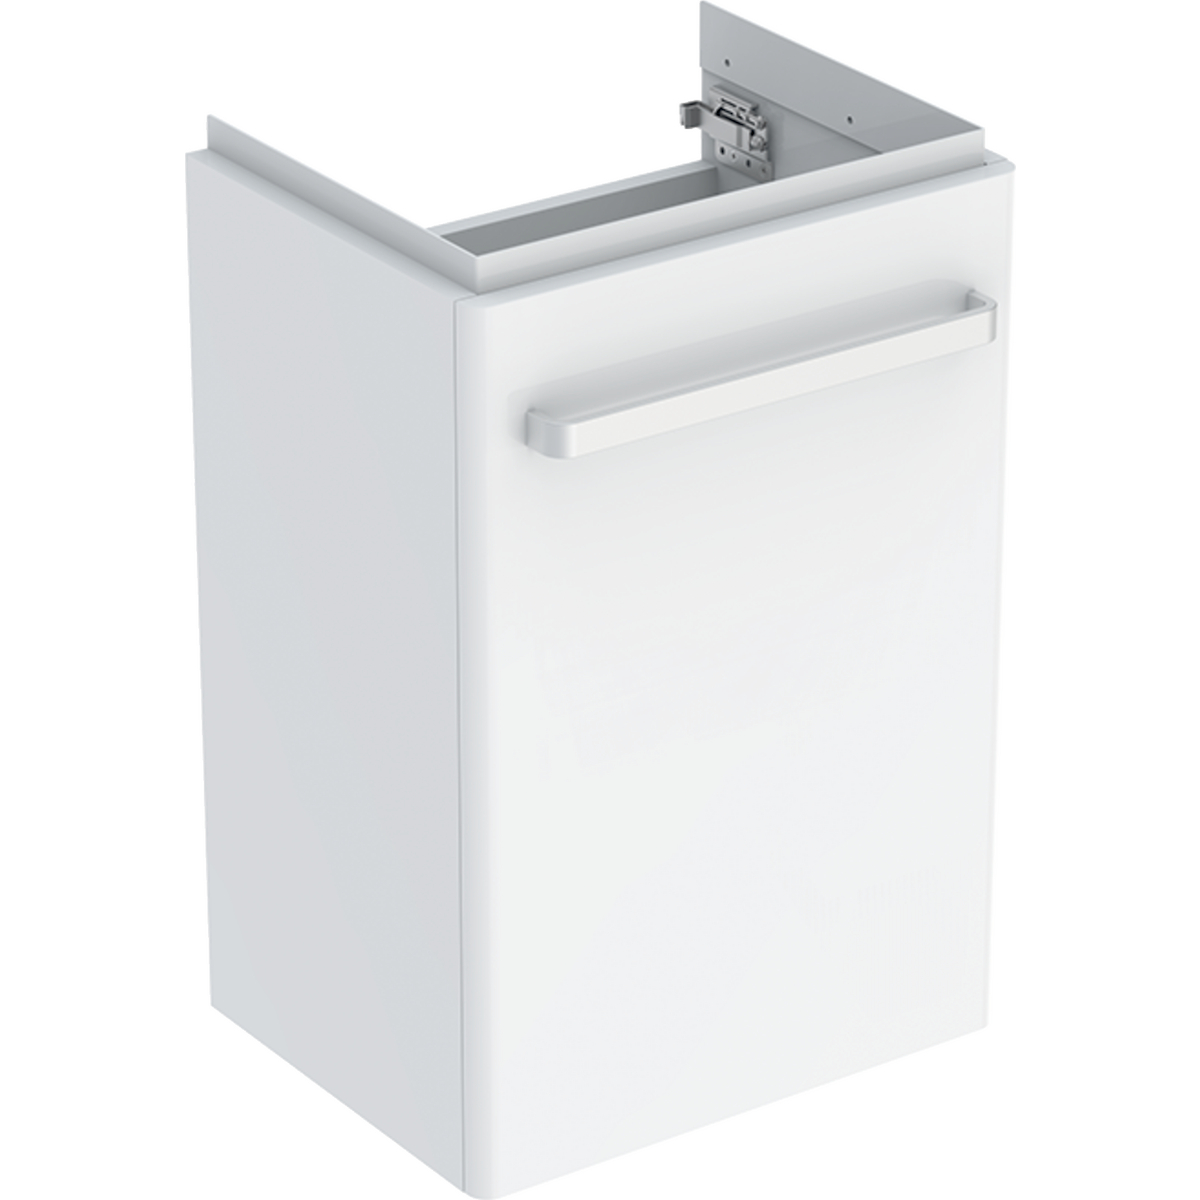 Selnova Compact Unit For Washbasin 450mm - White